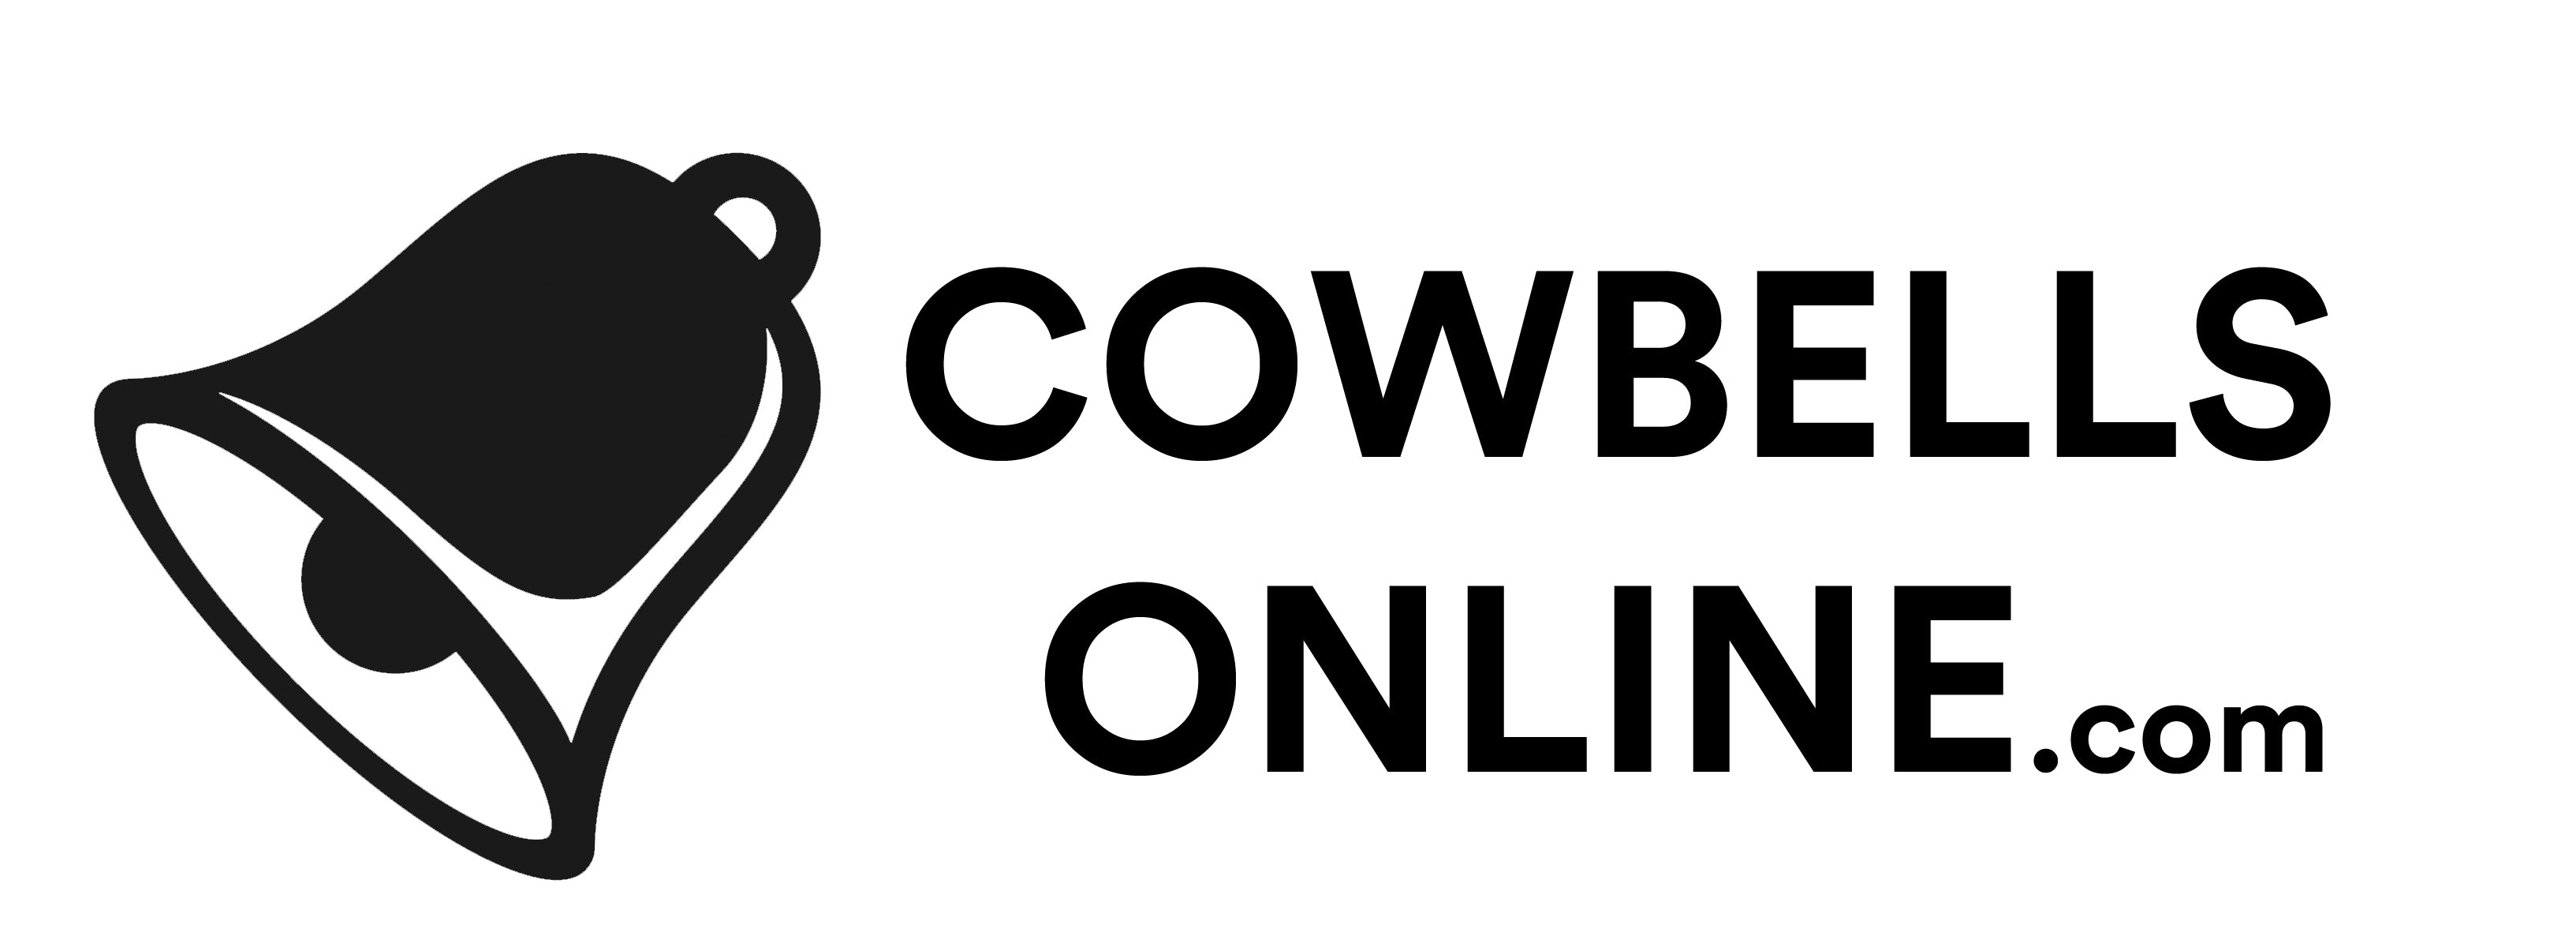 cowbellsonline.com